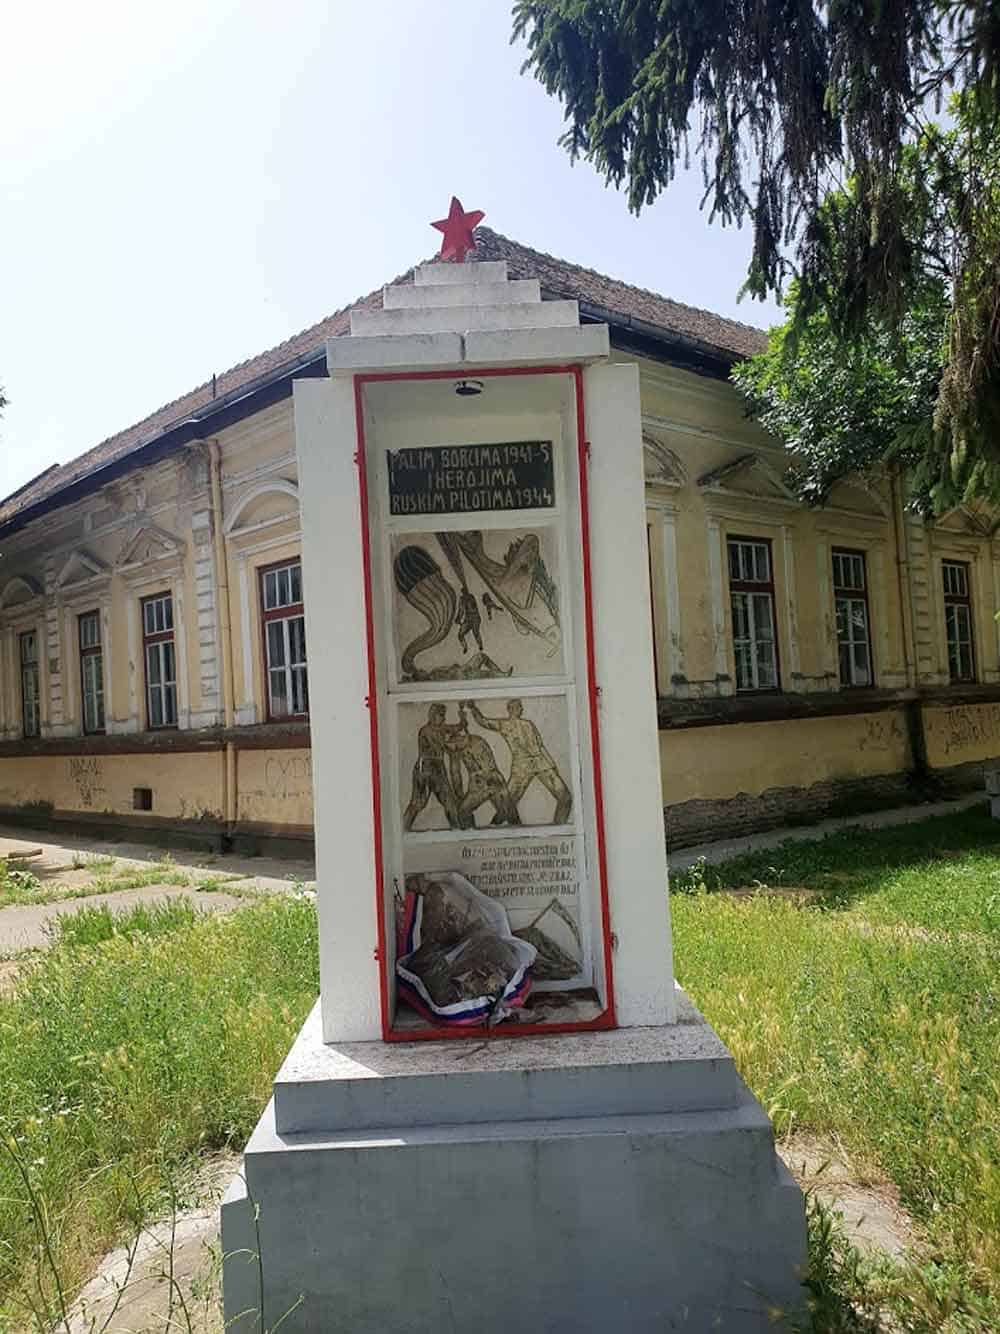 POČAST: Spomenik Sovjetskim pilotima u Sonti